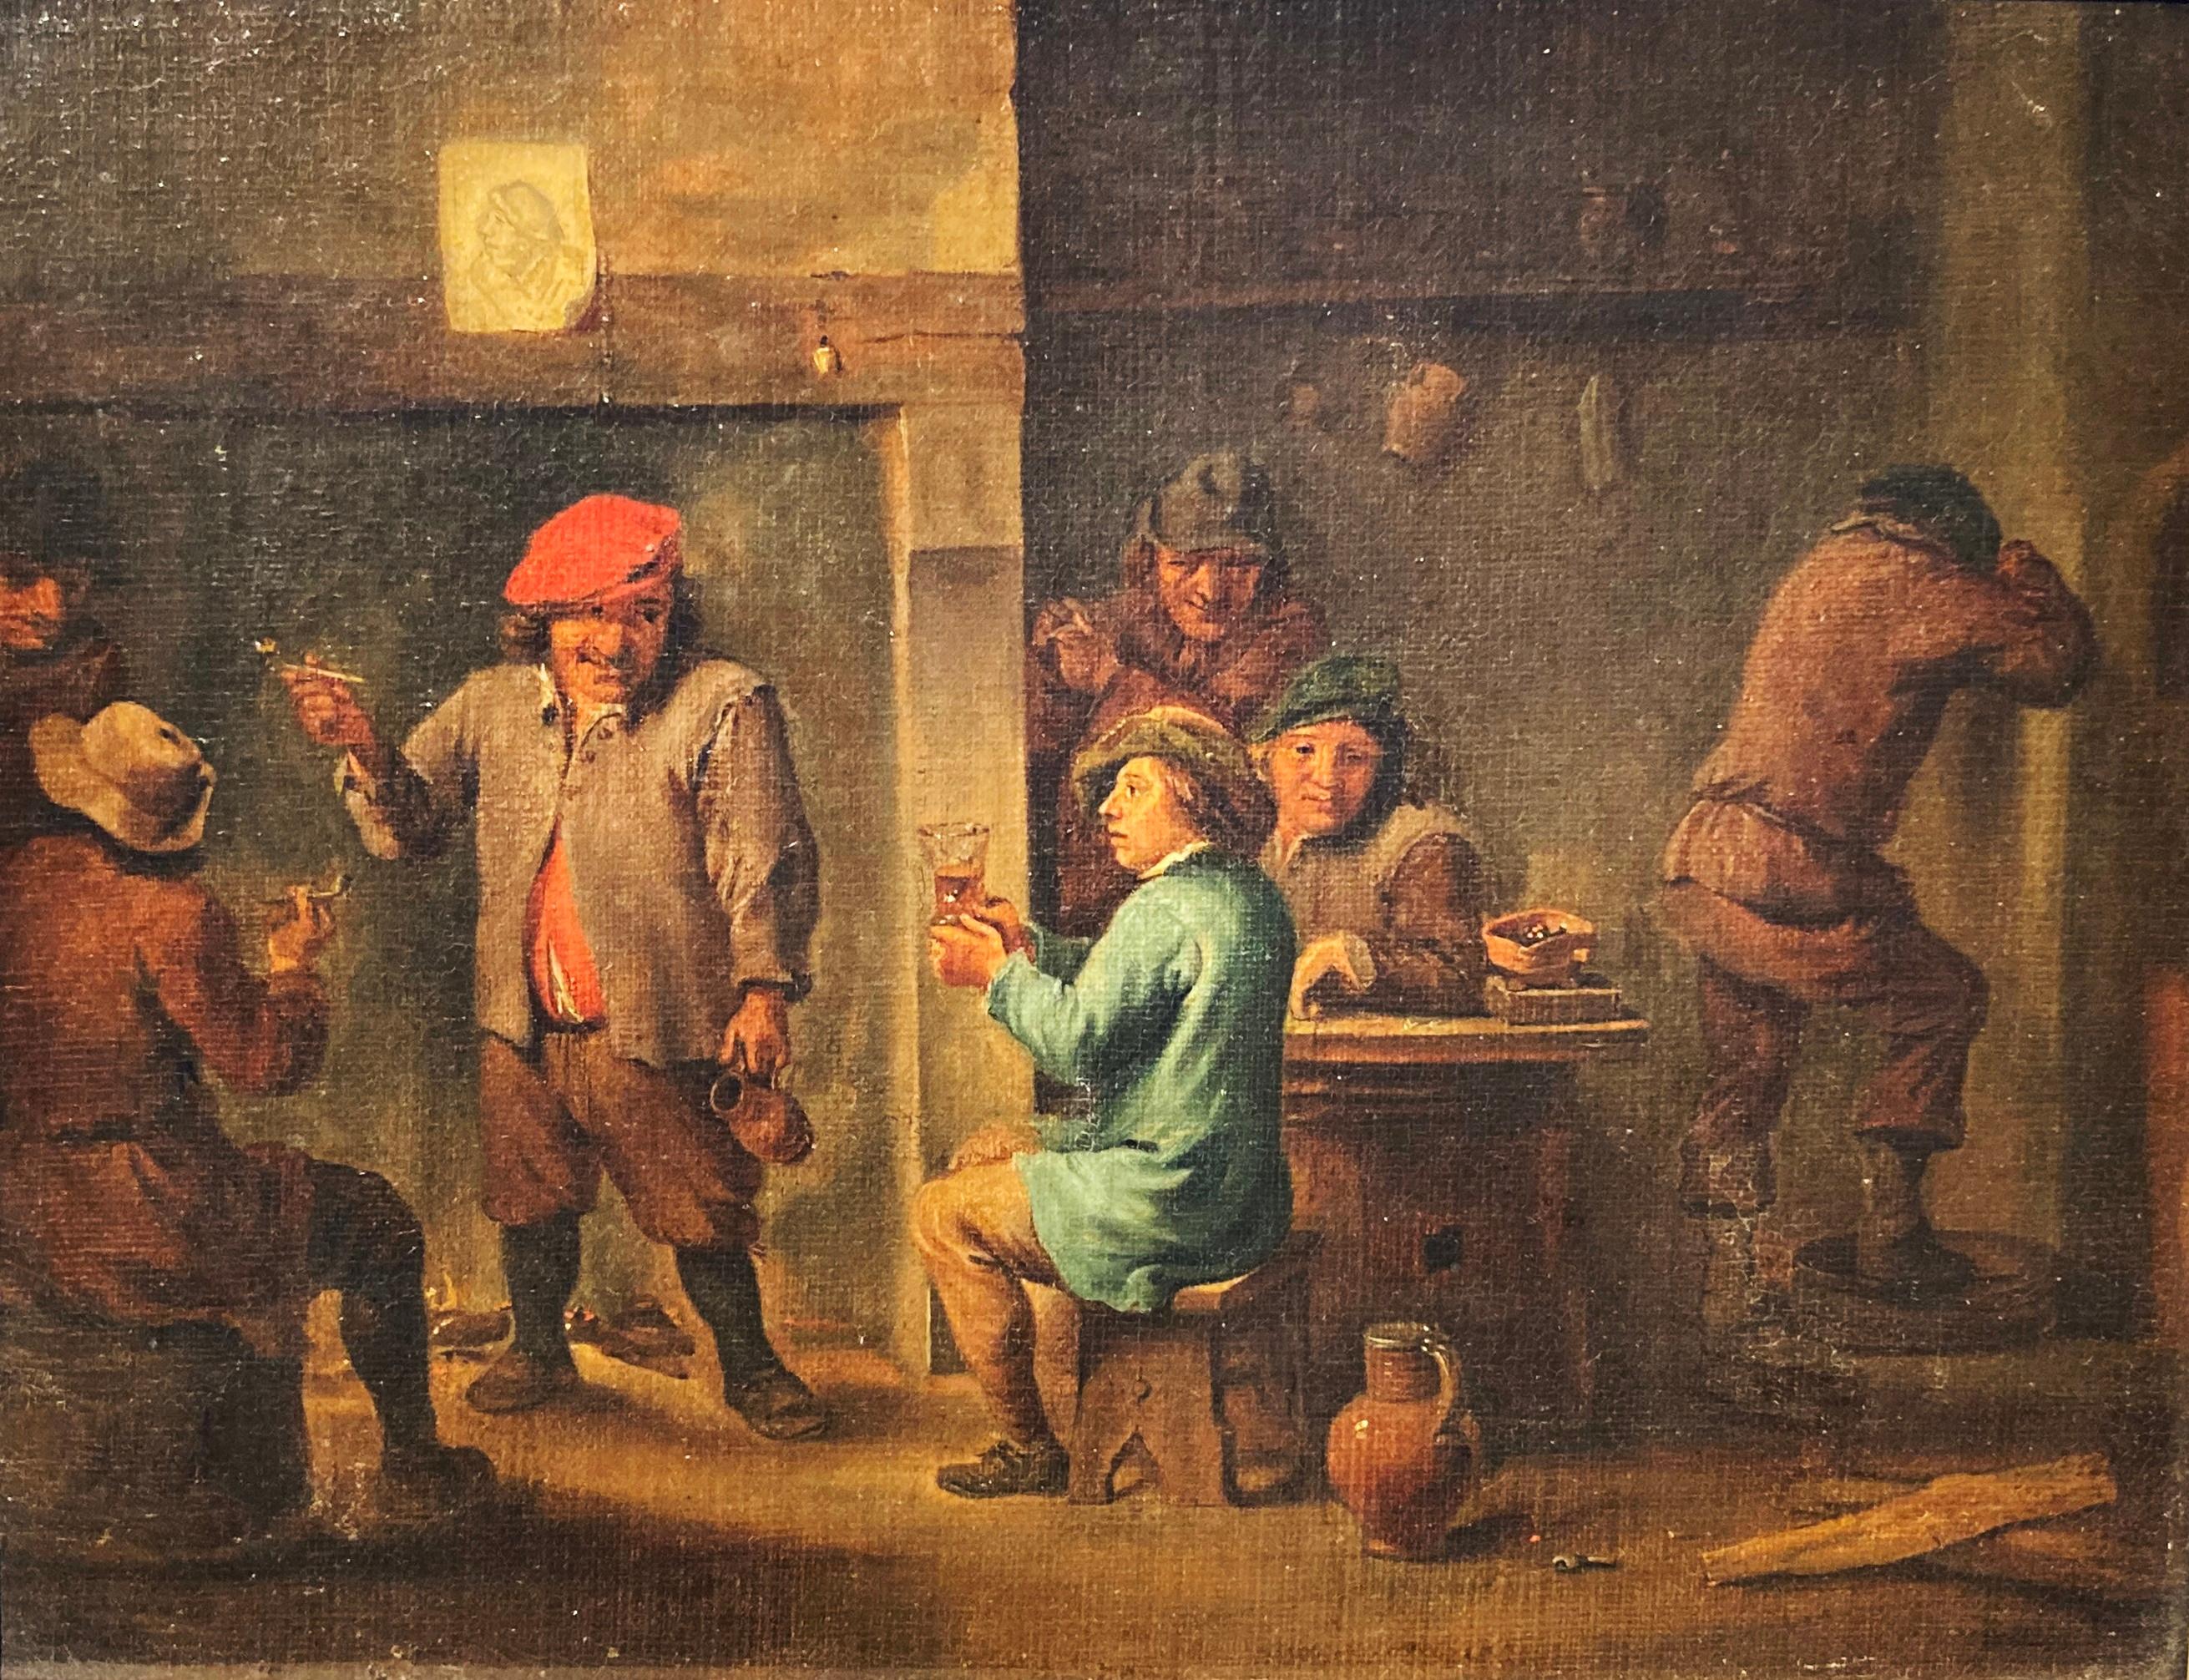 Kreis Teniers, Flämische Kunst, Bauern rauchen und trinken in einer Taverne Interieur